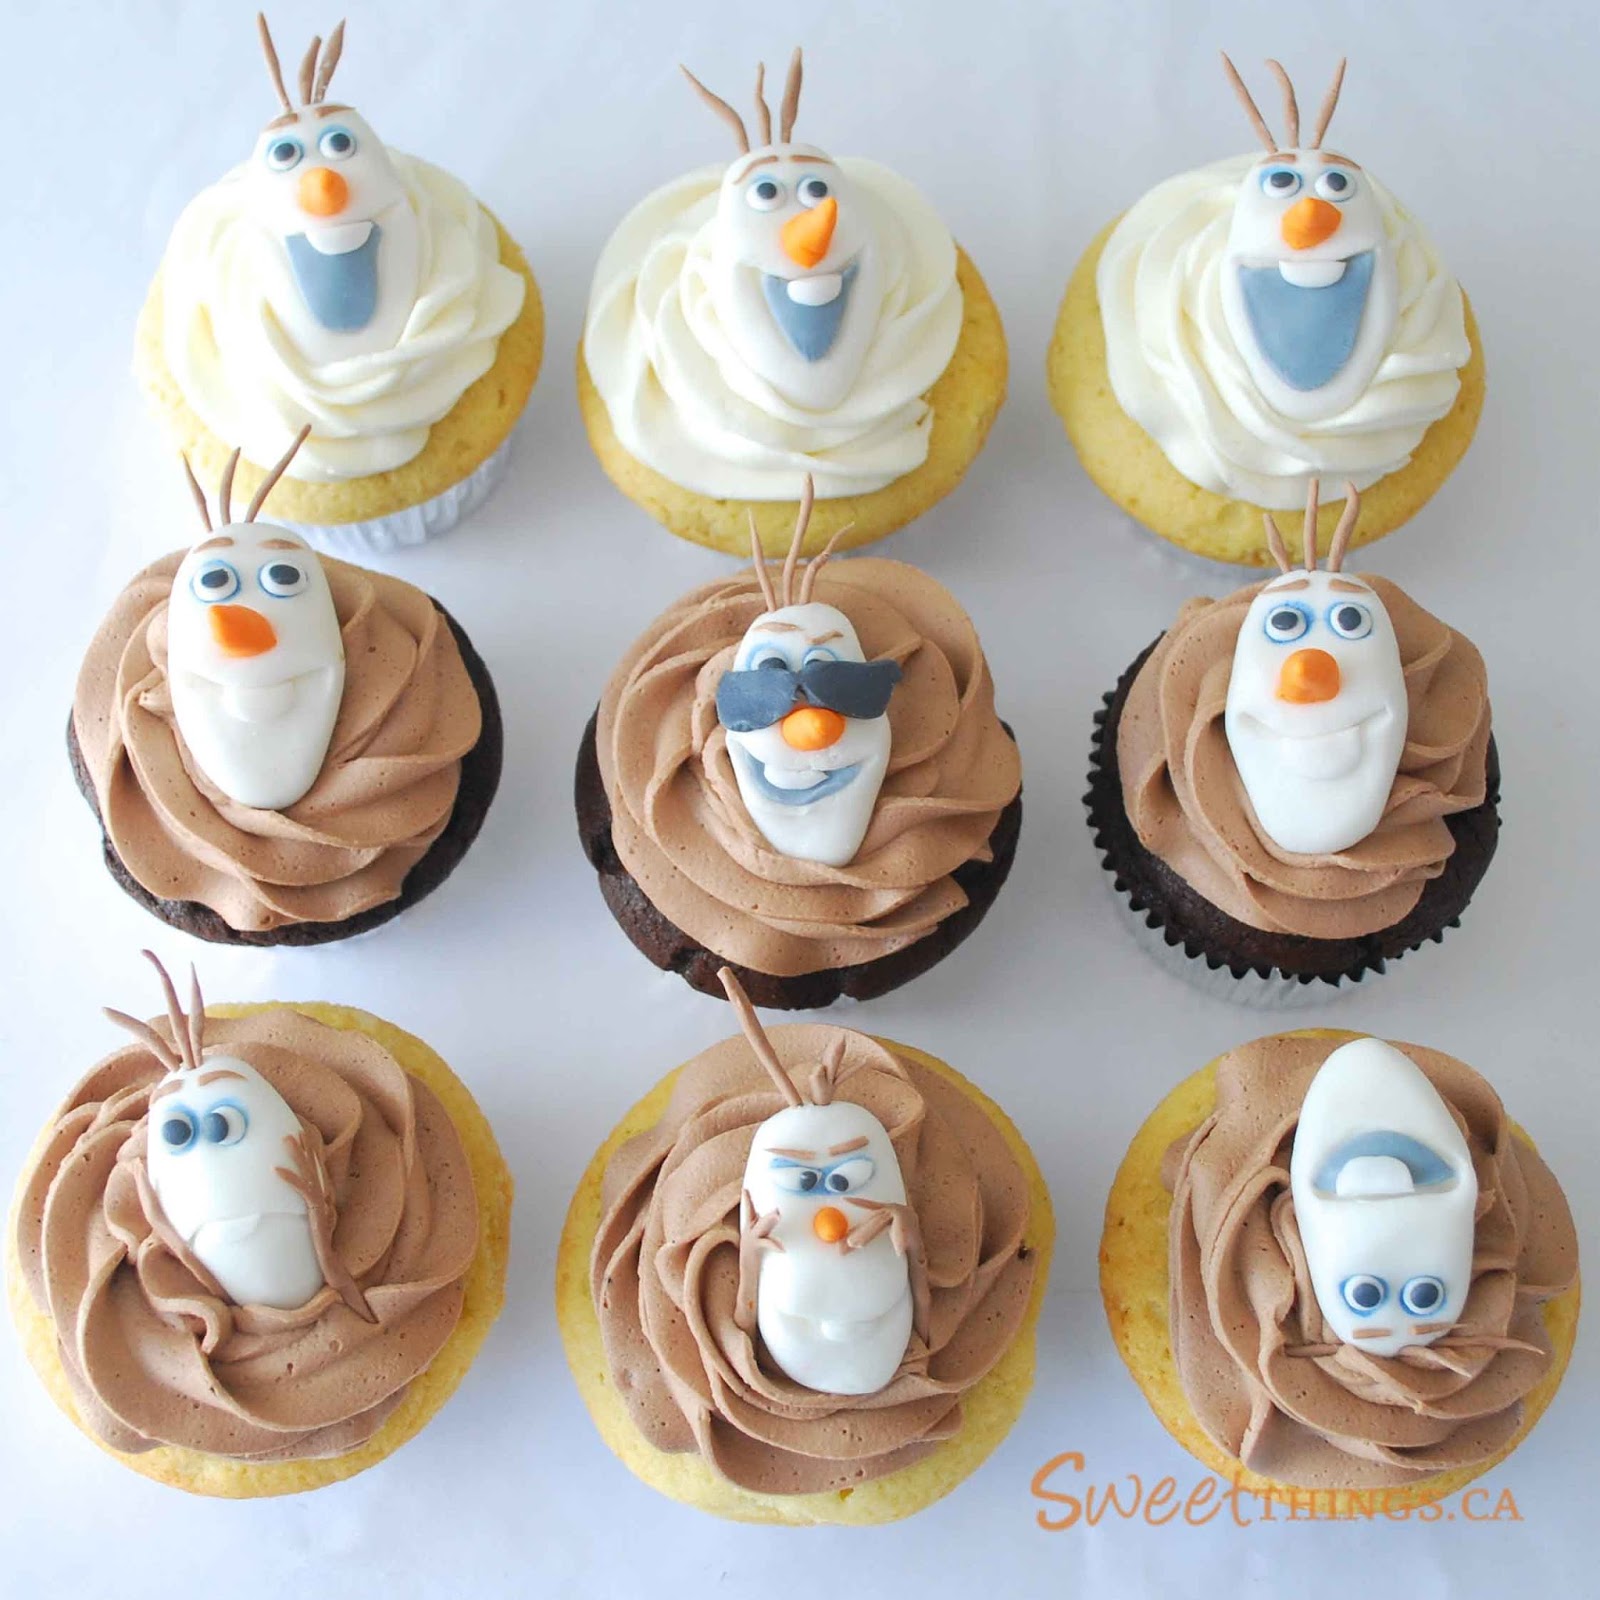 cupcake da frozen Olaf